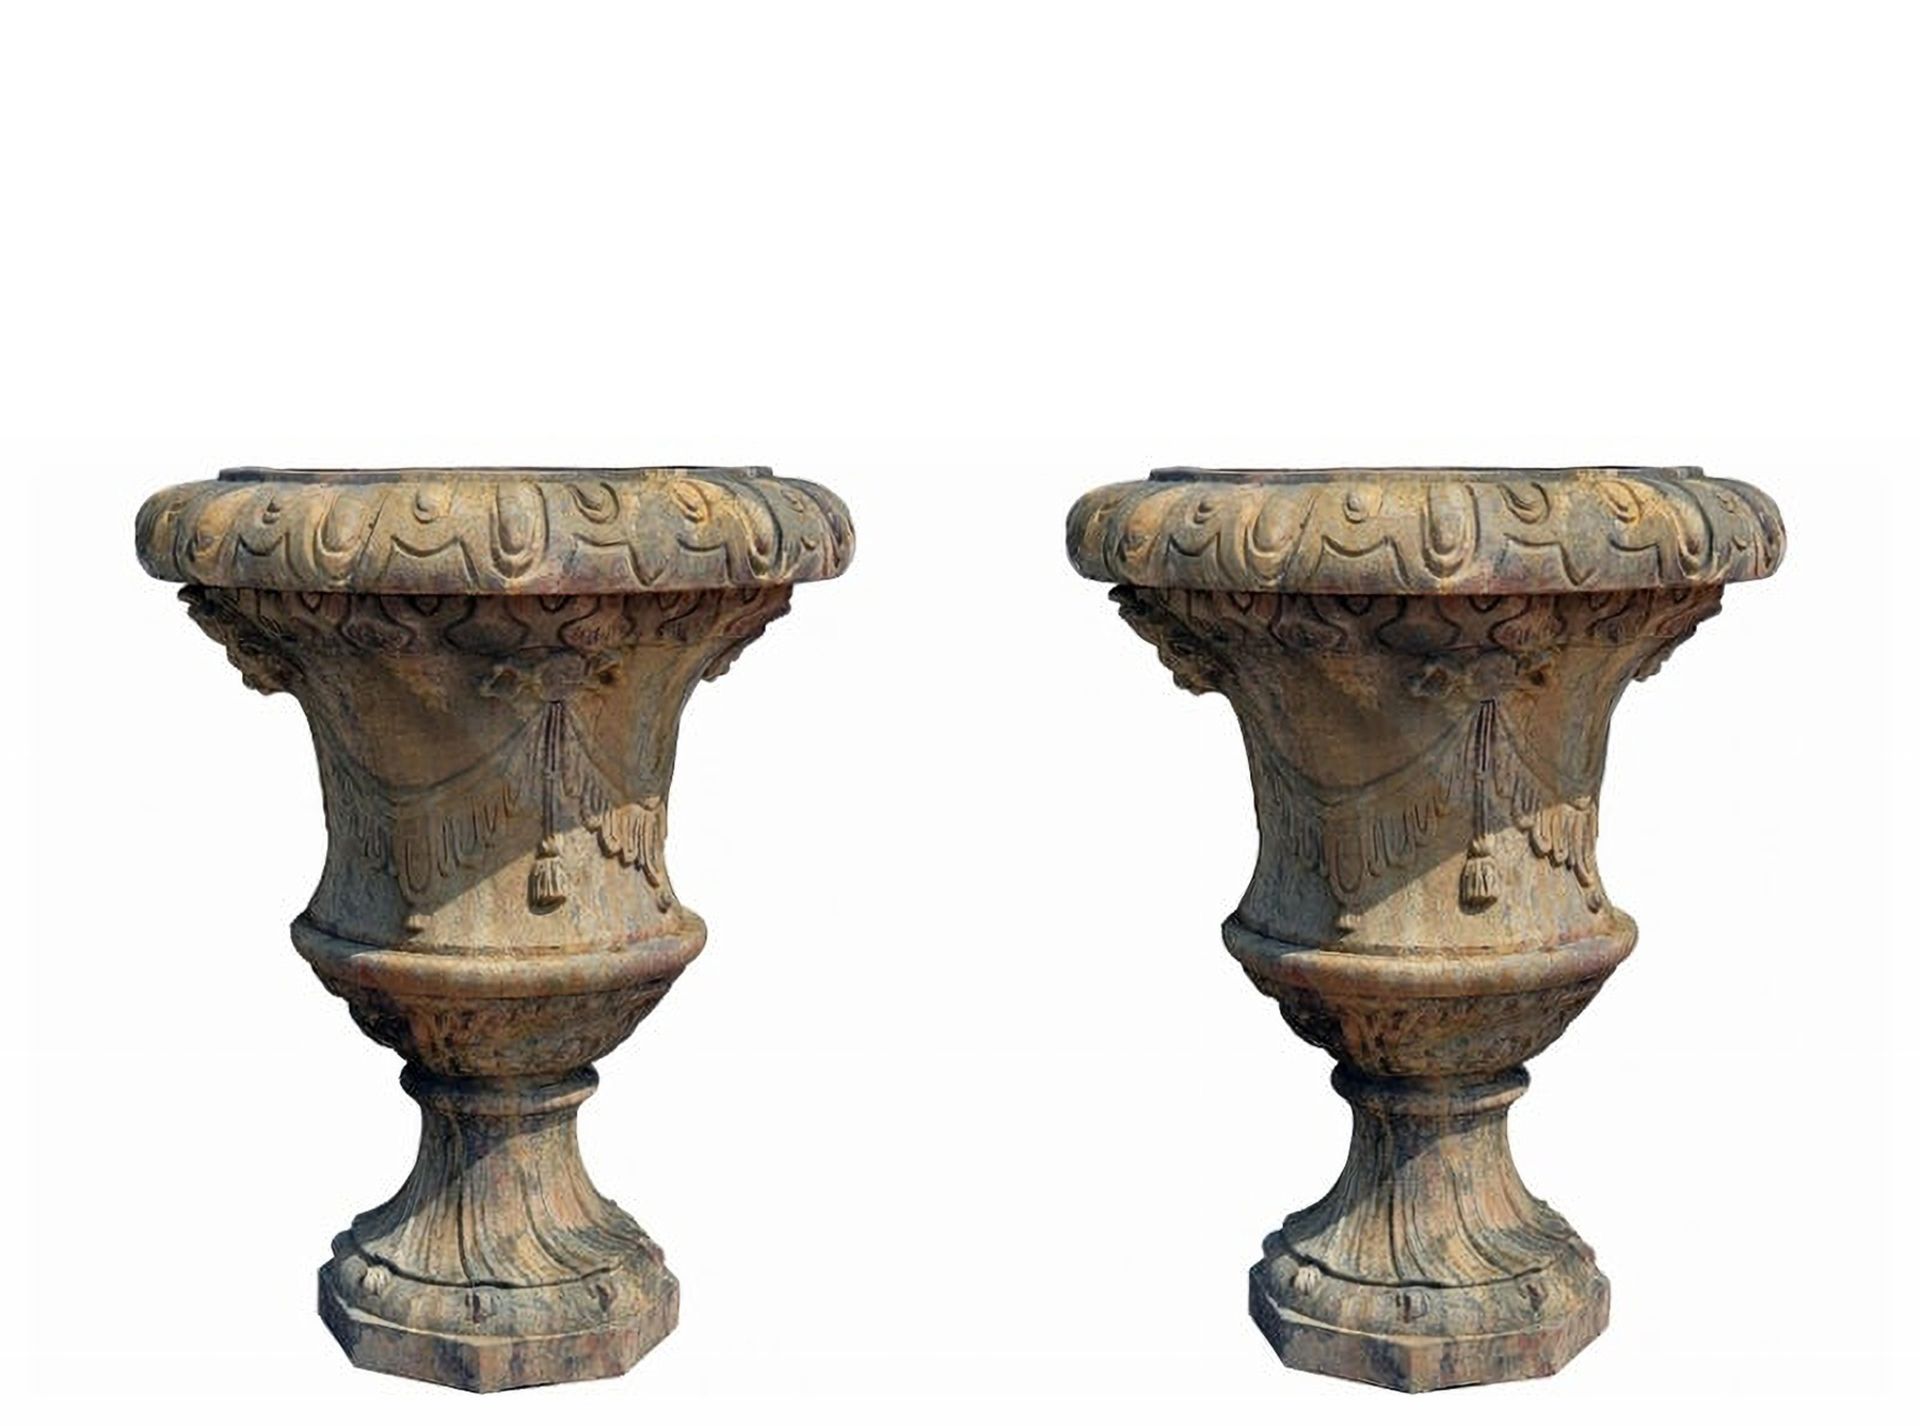 Pair of Florentine Vases (Italy) in Impruneta terracotta late 19th century